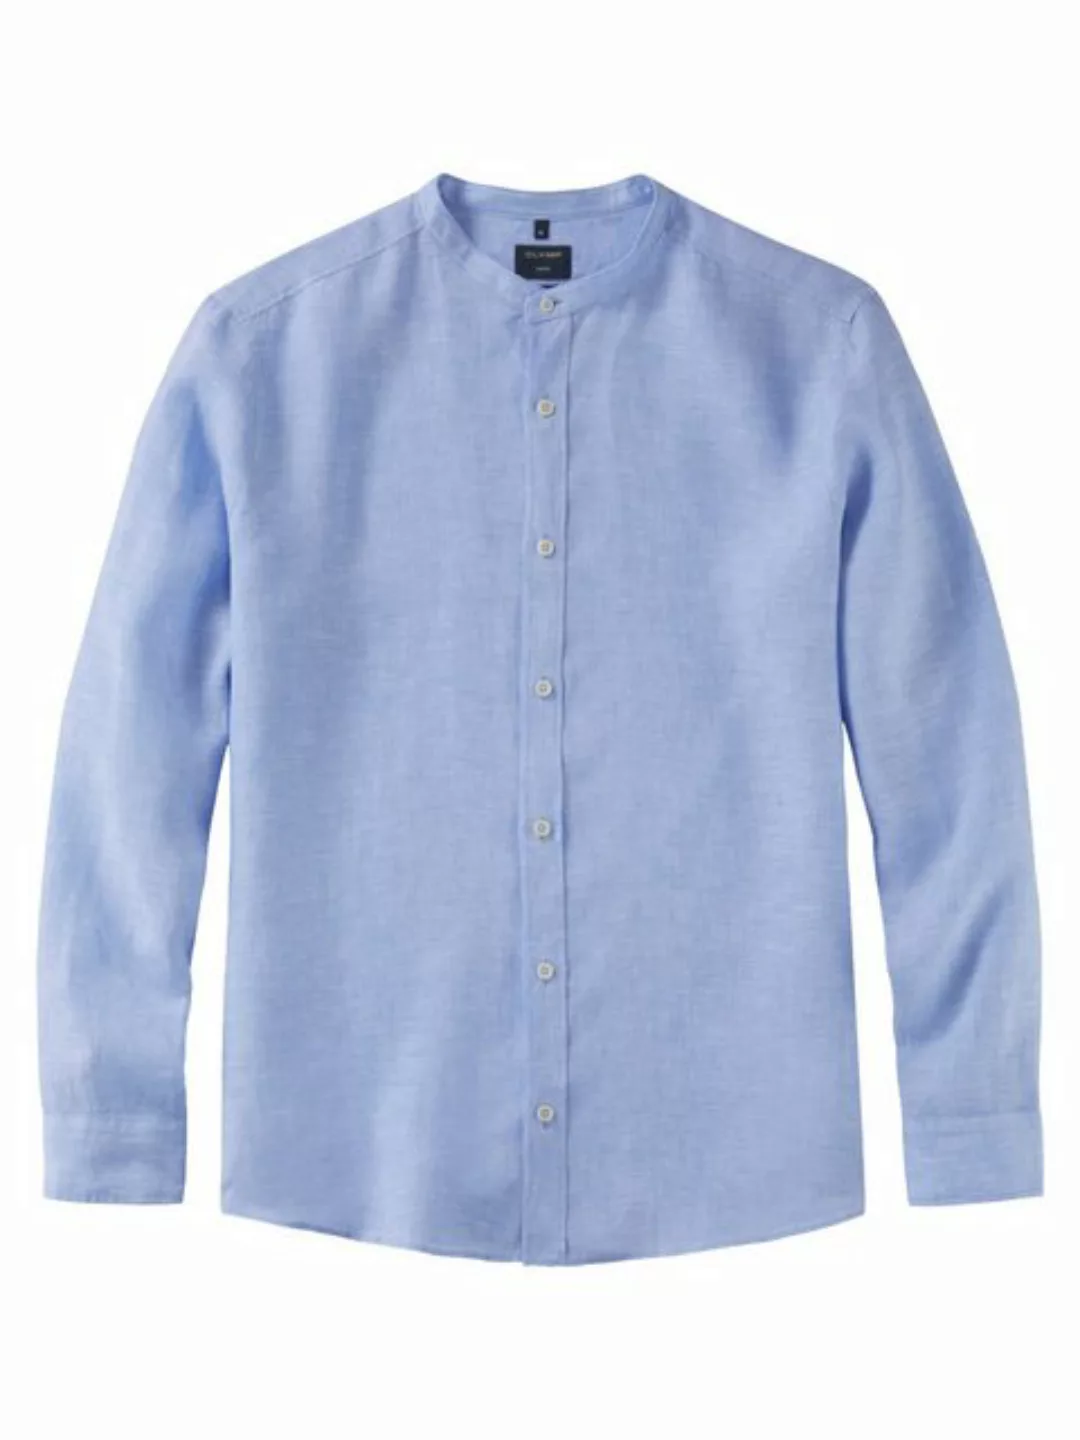 OLYMP Leinenhemd 4046/54 Hemden günstig online kaufen